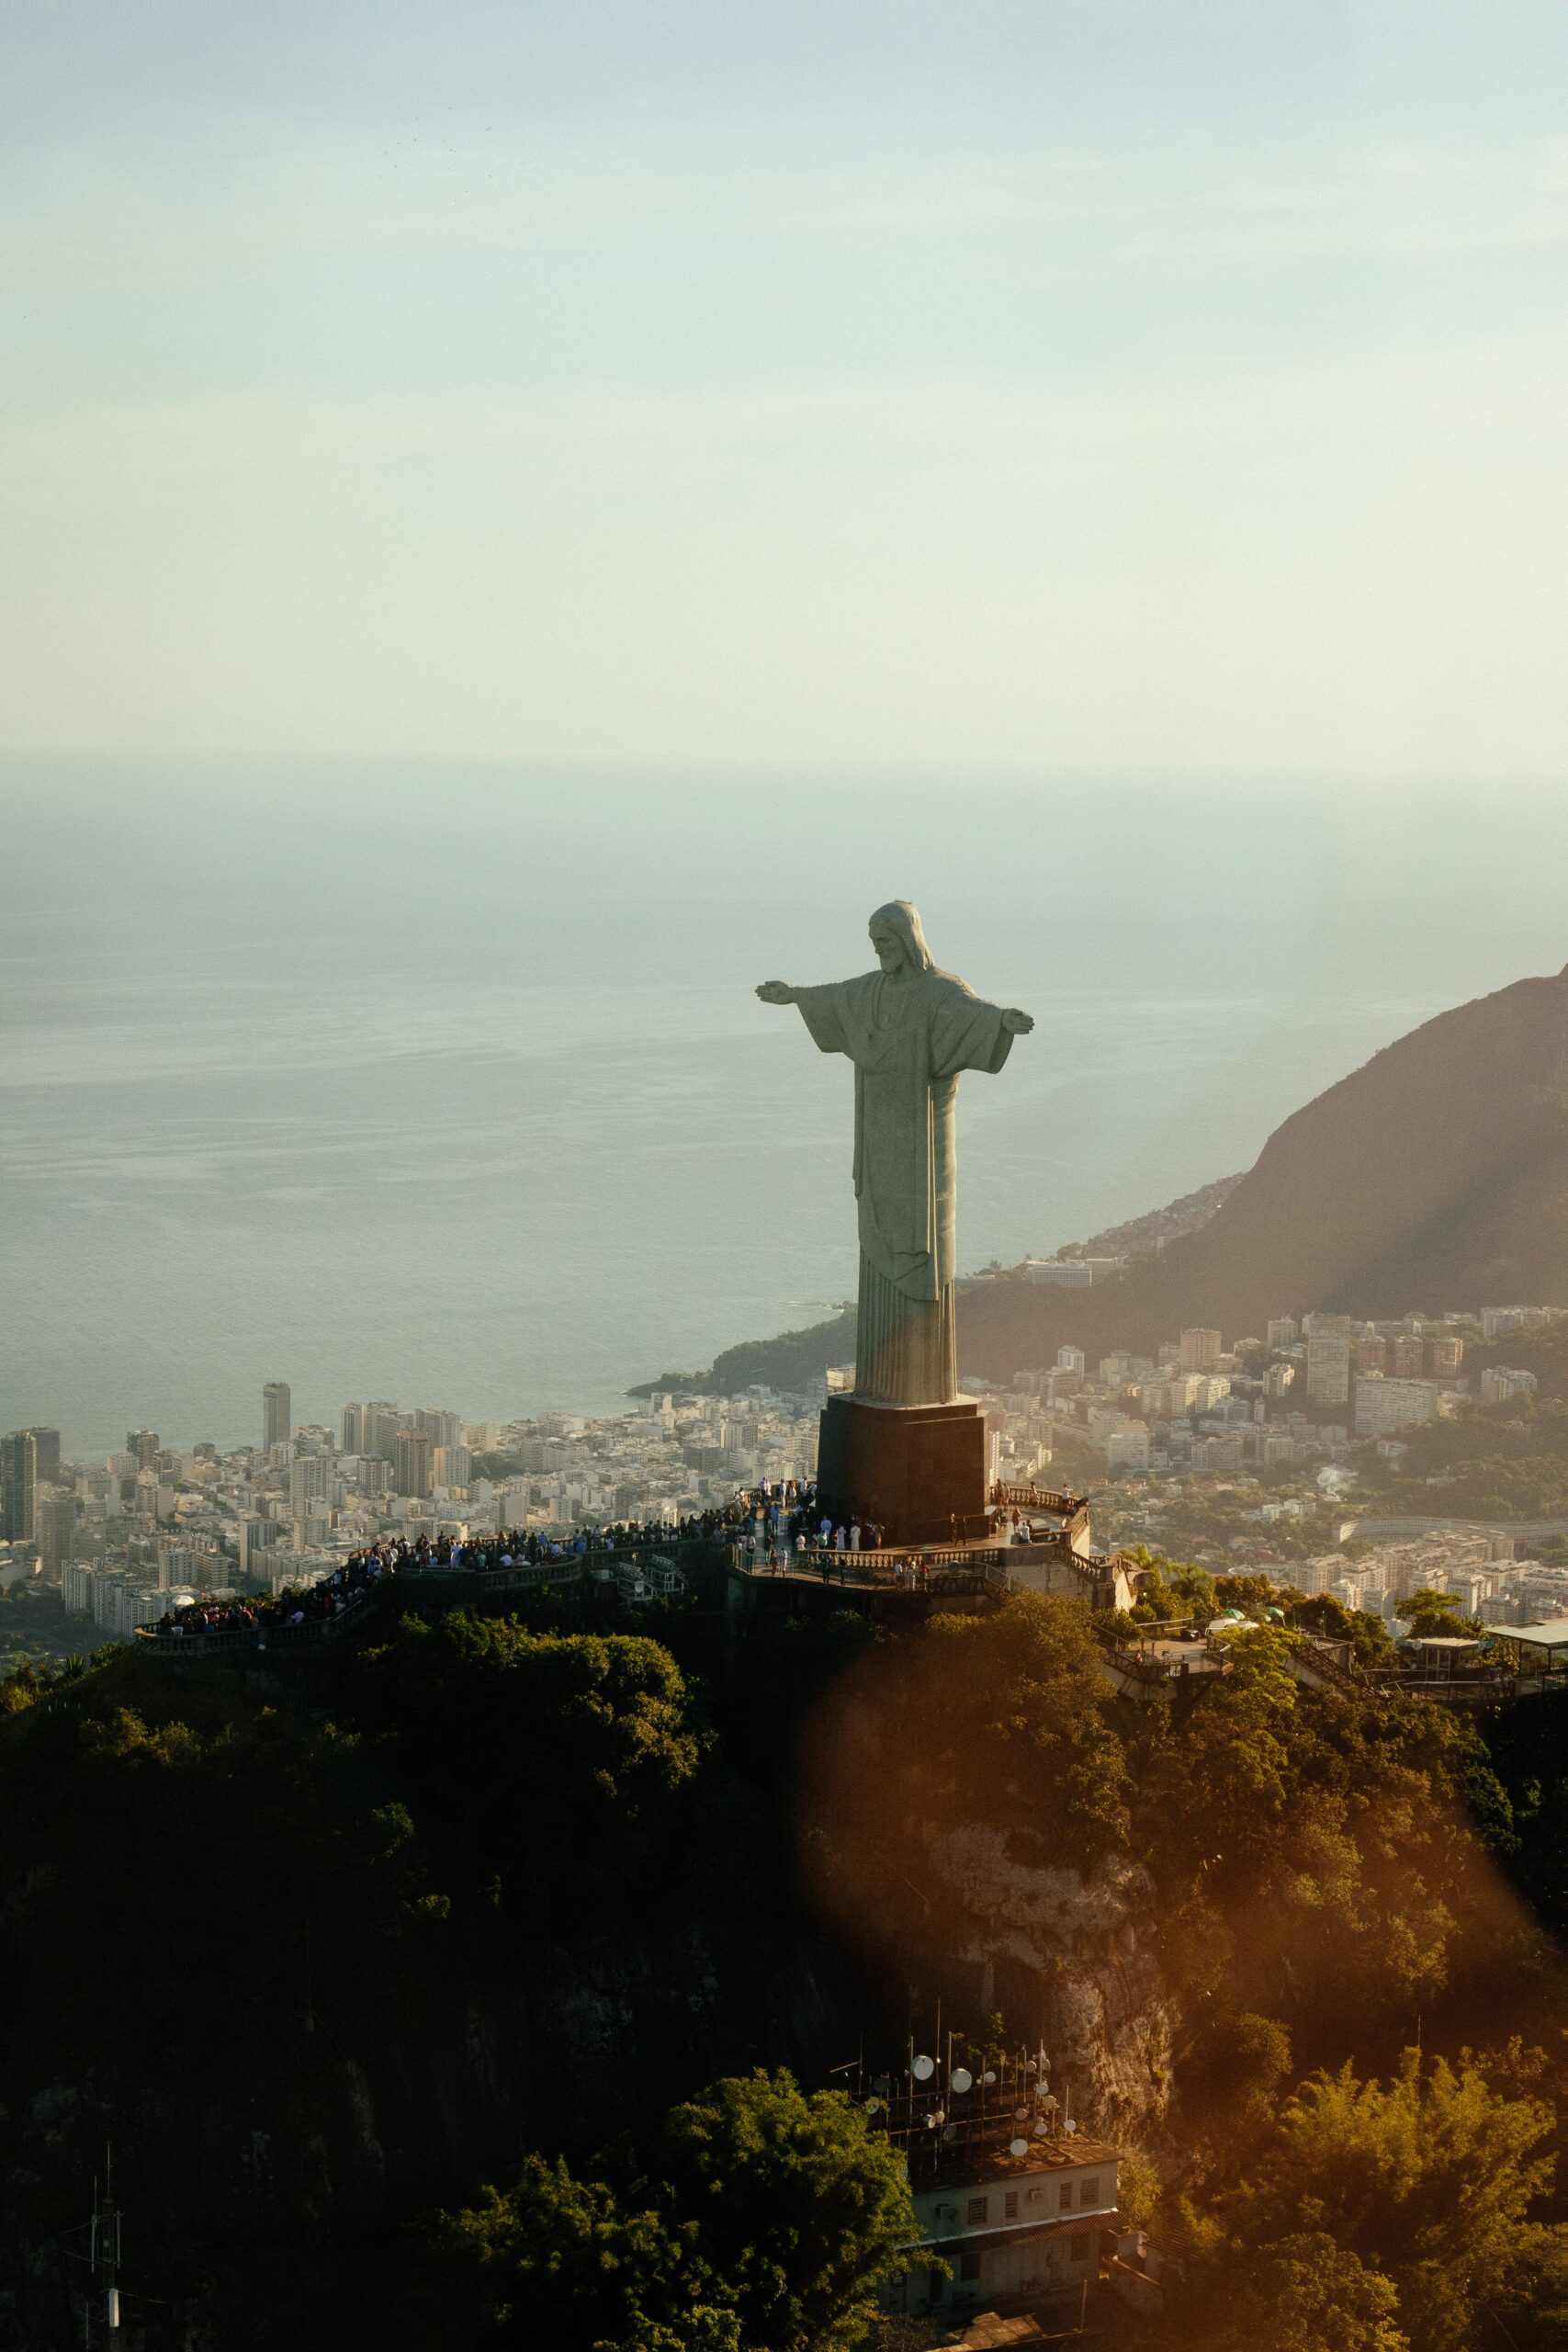 Rio de Janeiro: A City of Rhythm, Beauty, and Wonder